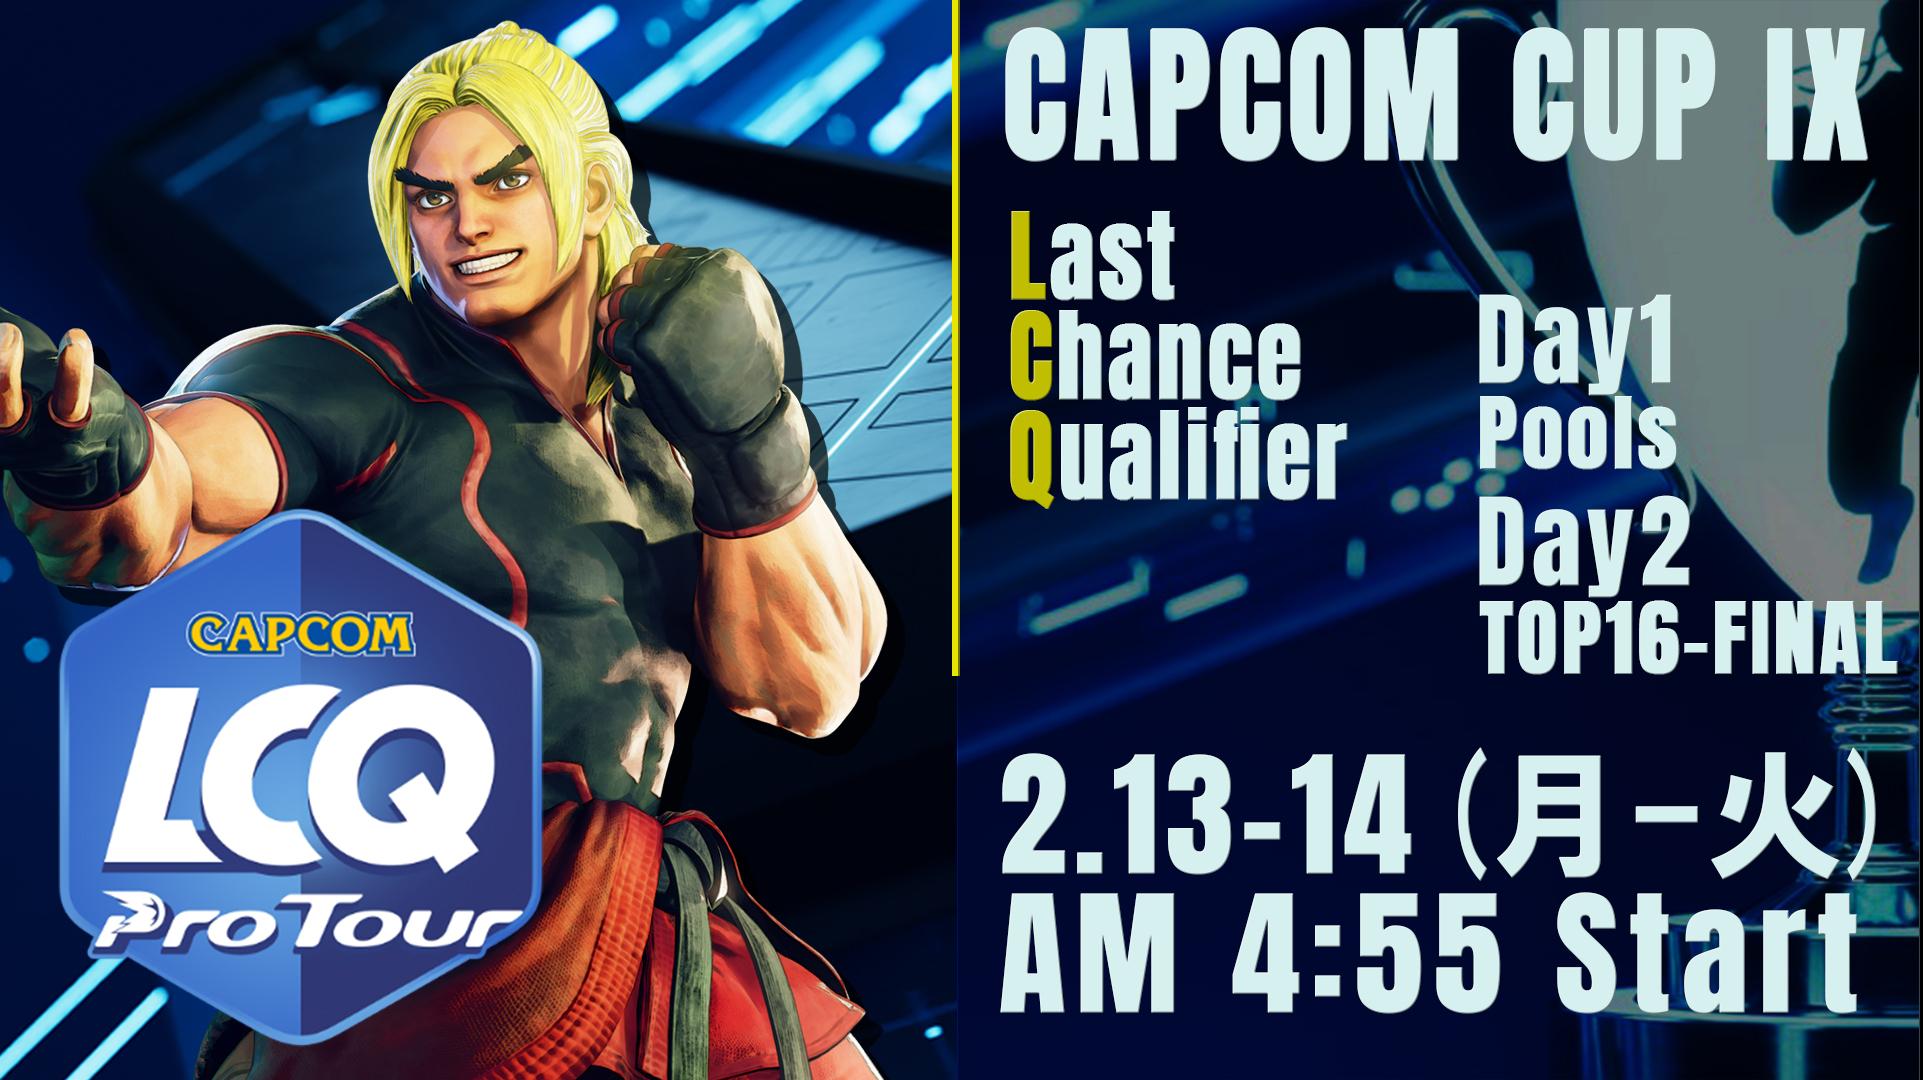 CAPCOM CUP IX Last Chance Qualifier feature image